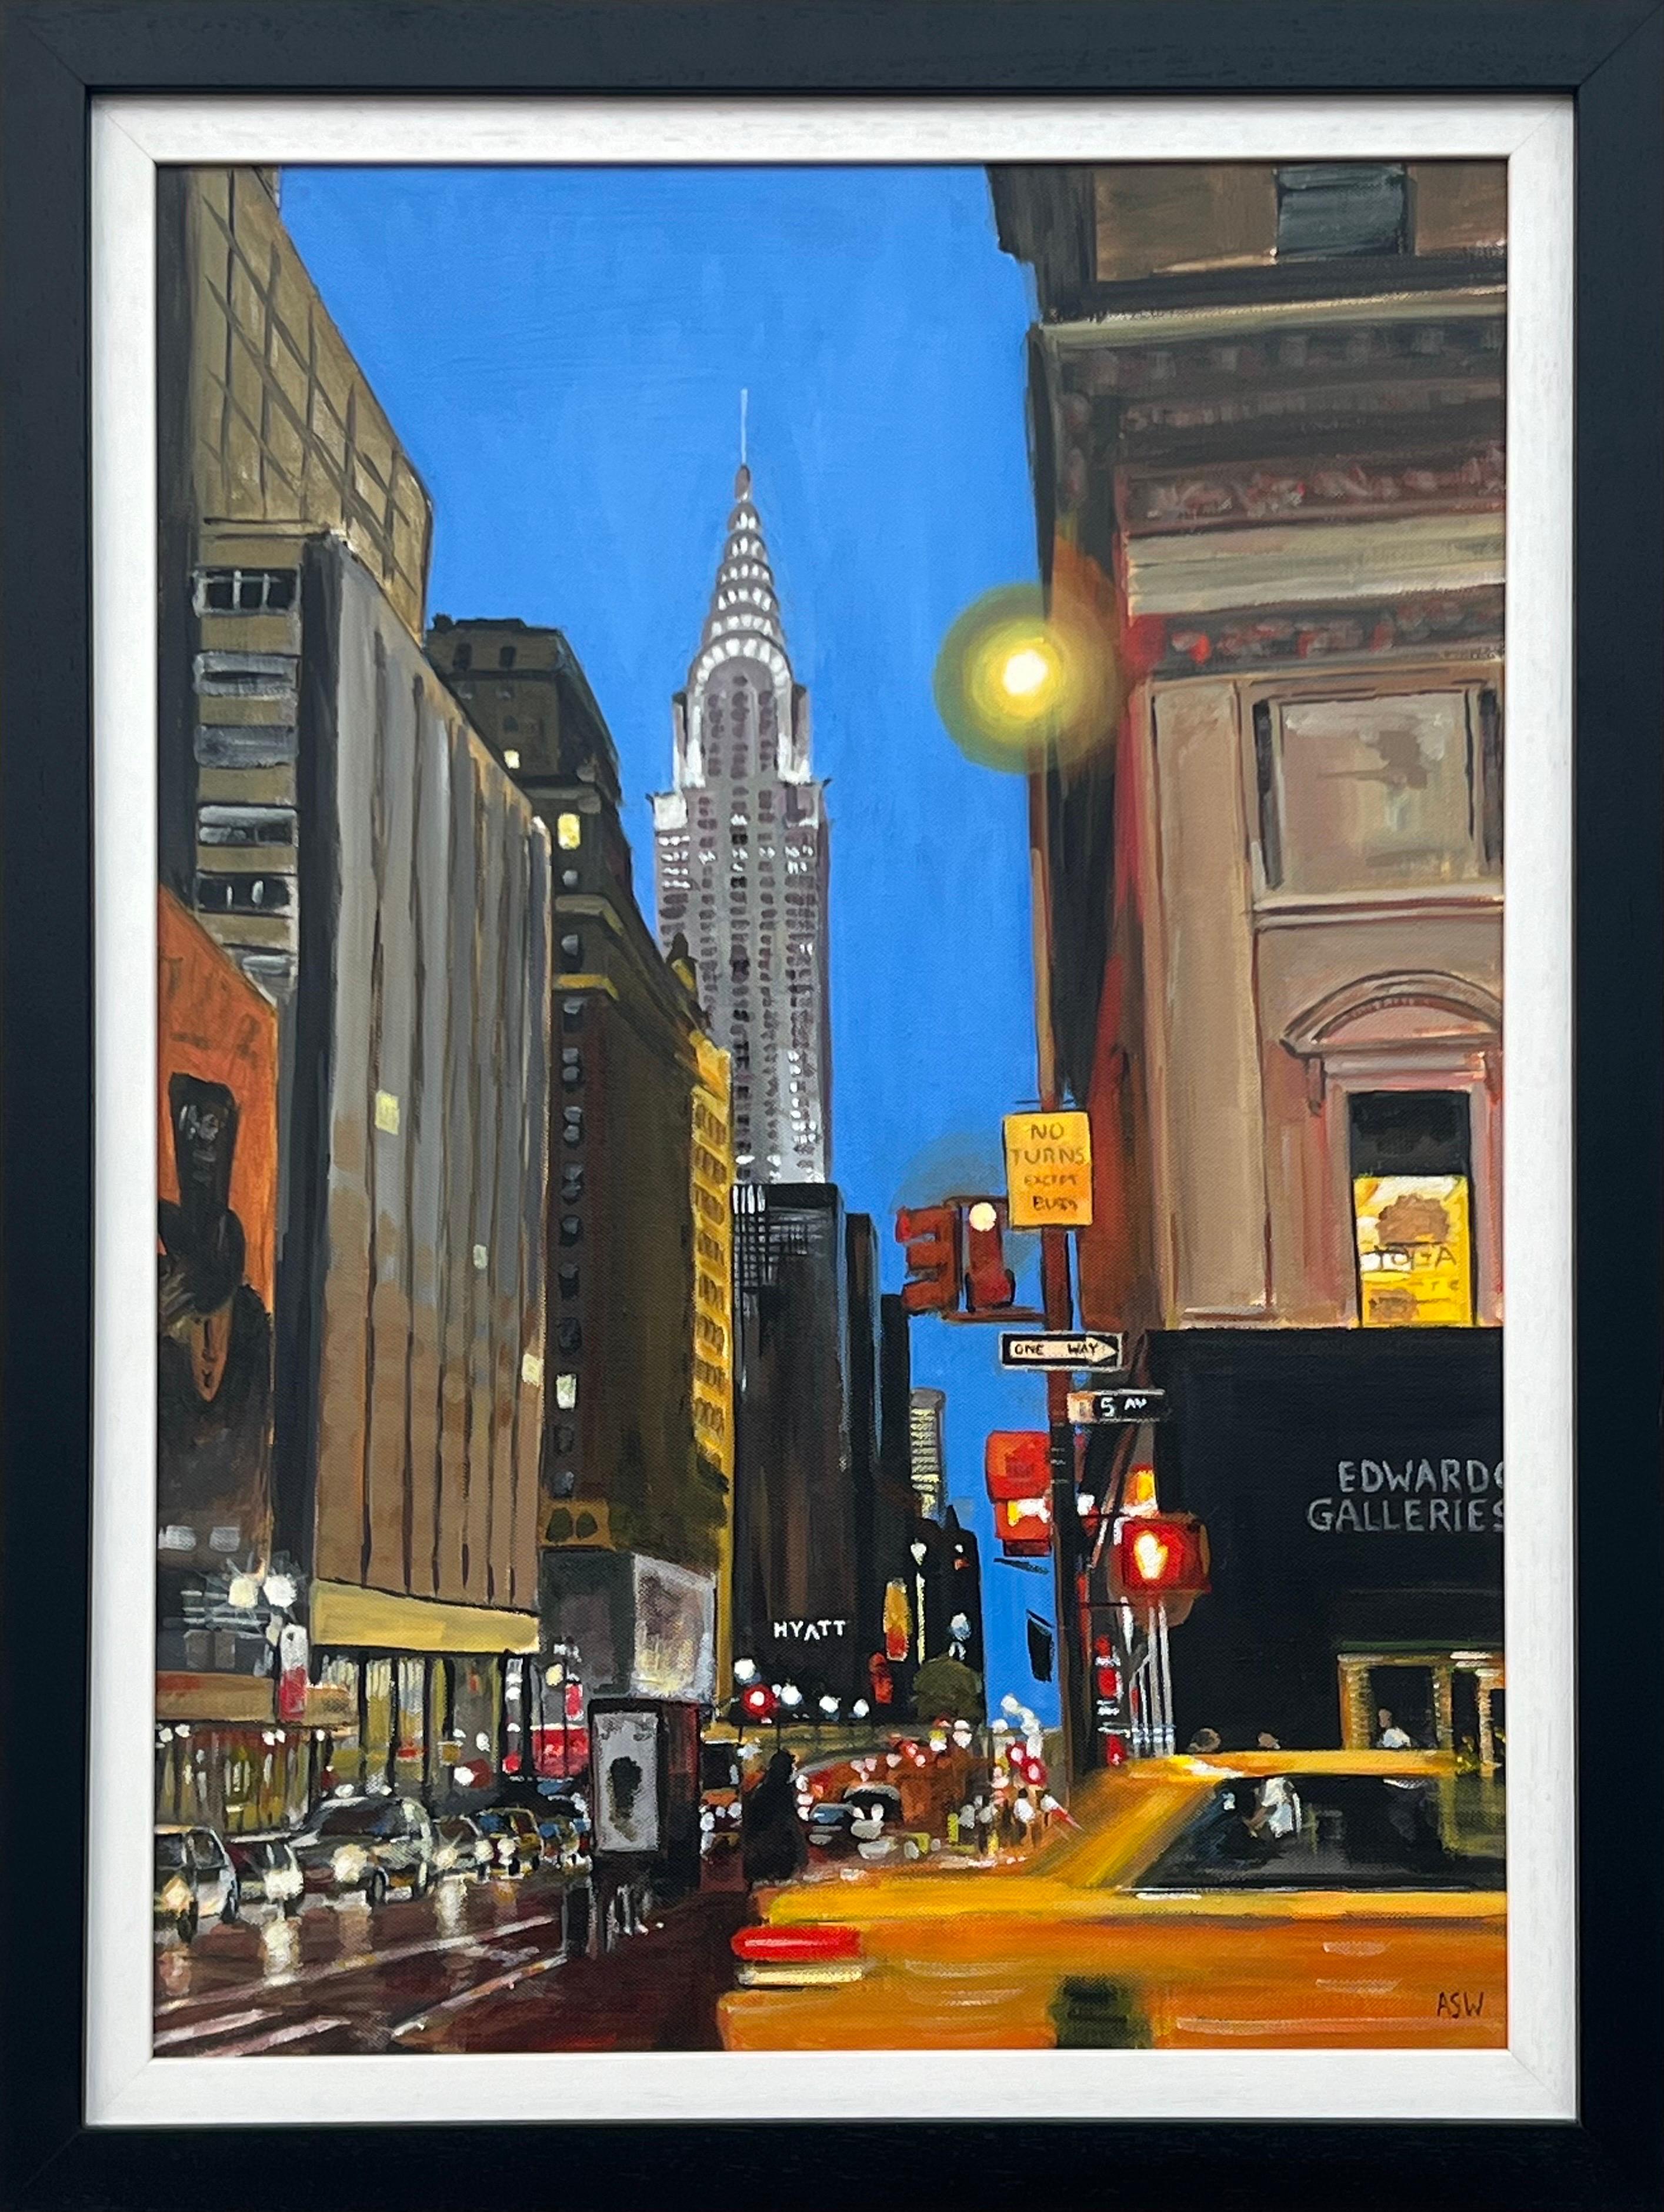 Chrysler Building Taxi Fifth Avenue New York City par un artiste britannique contemporain